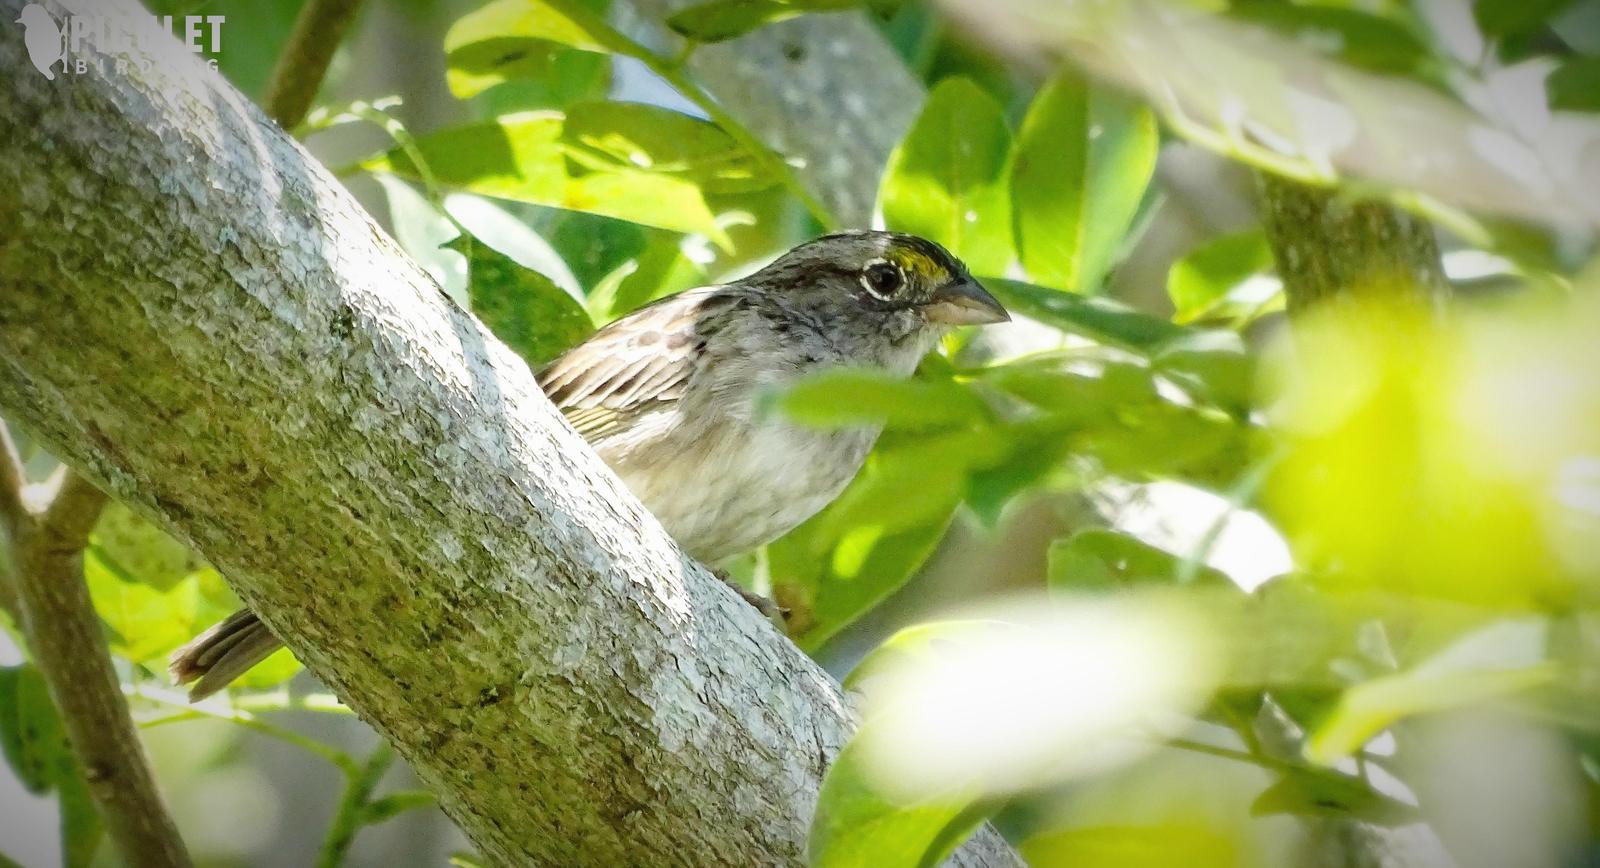 Grassland Sparrow Photo by Julio Delgado